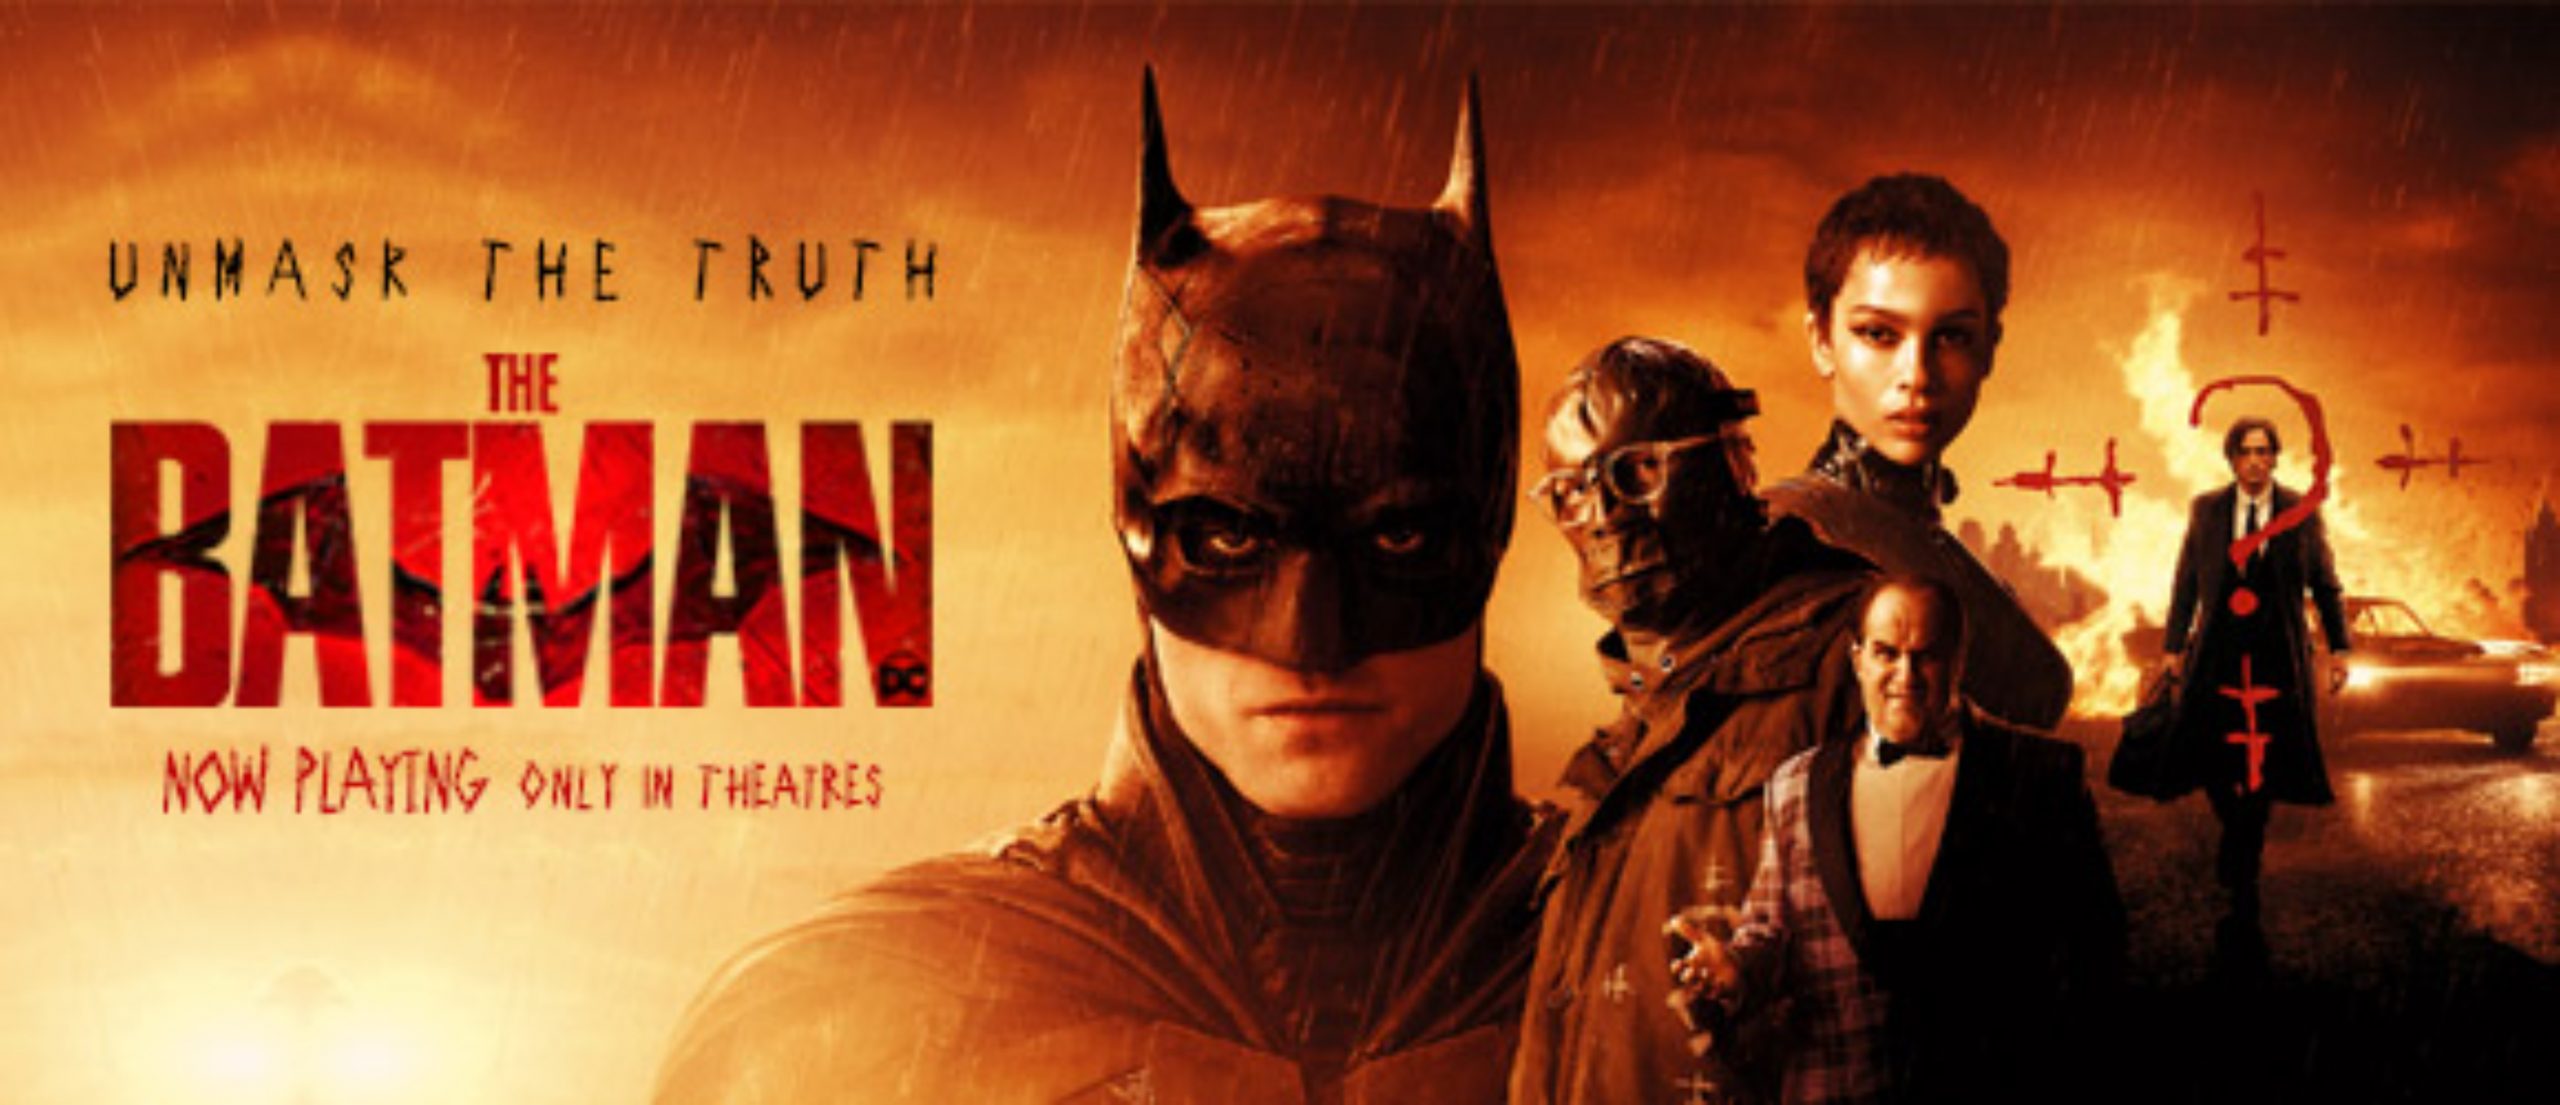 When Will The Batman Release on OTT Like Netflix, Amazon, Disney Plus? -  OtakuKart